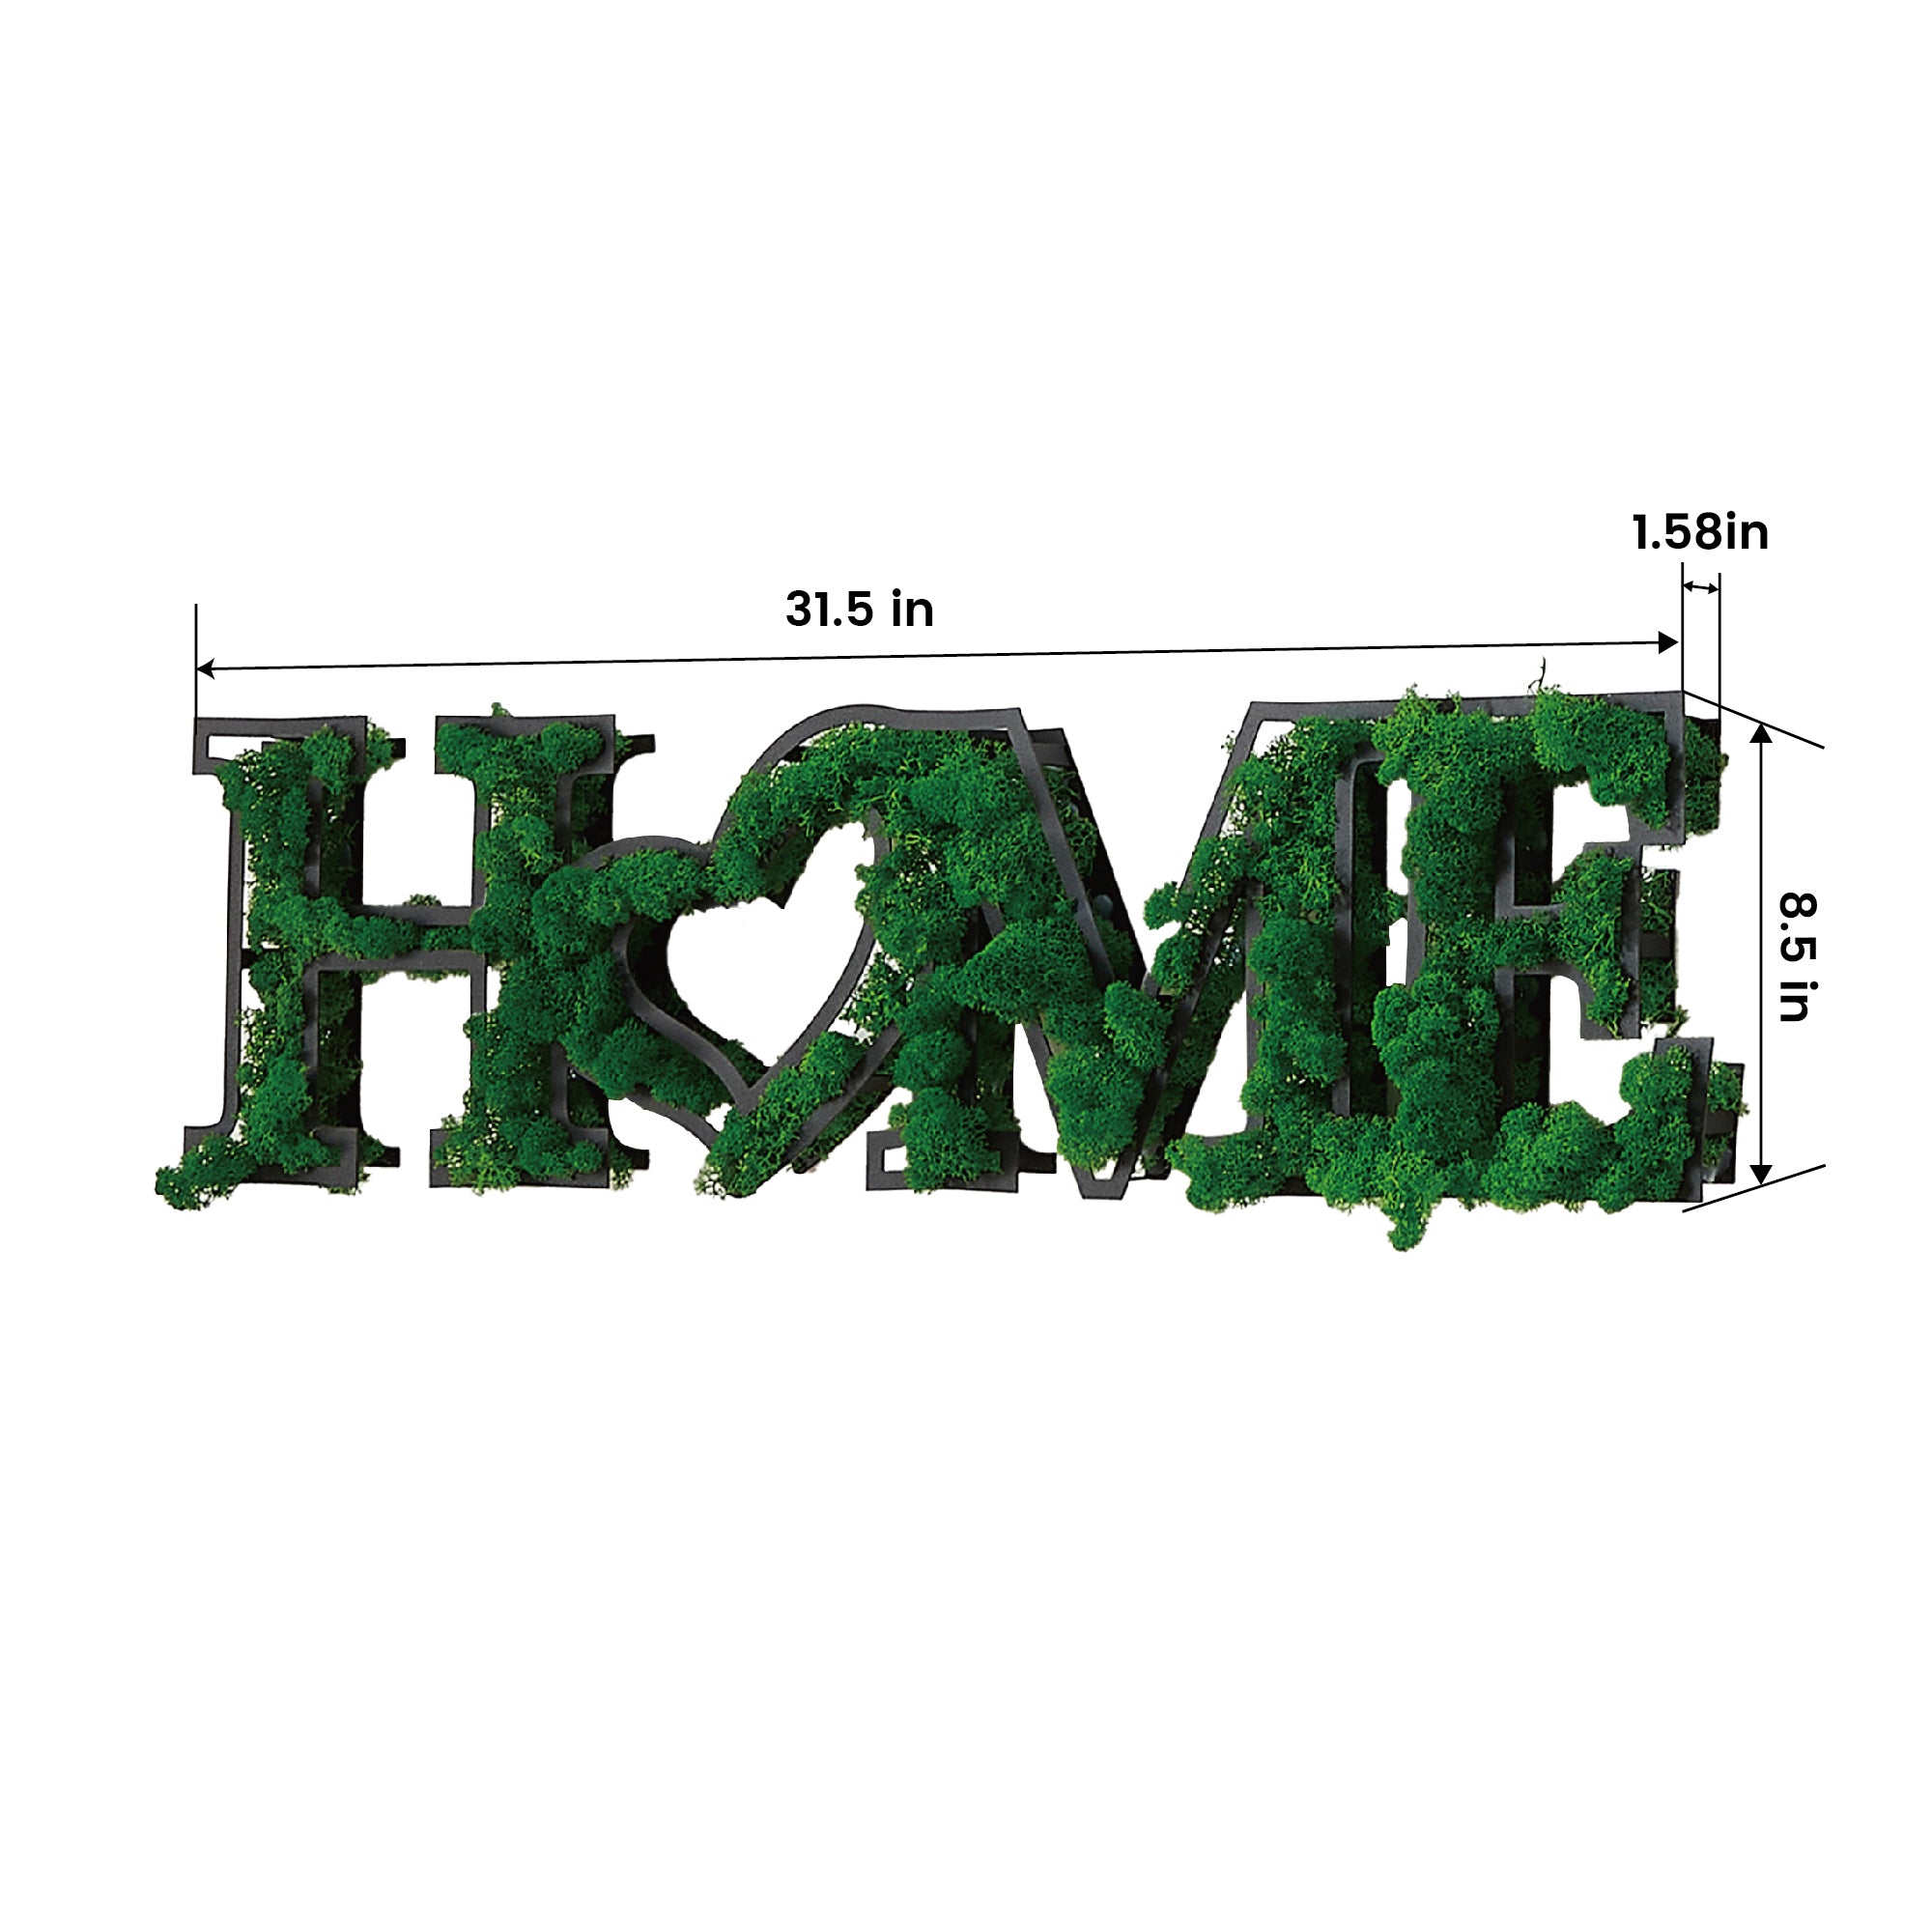 HOME Letter Art Moss Wall Decor green-iron